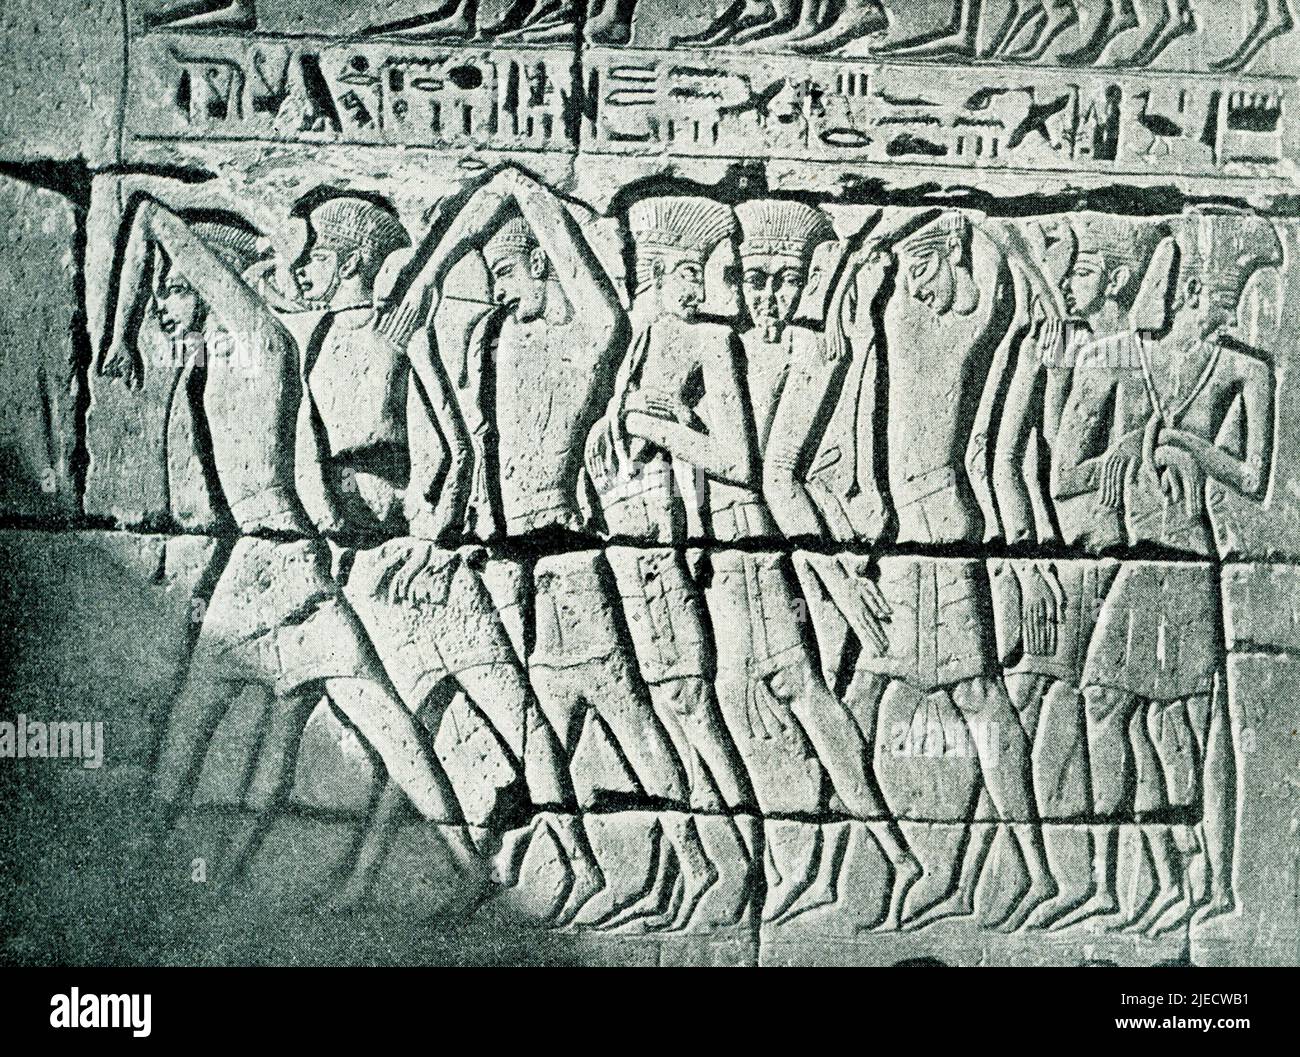 Esta imagen de 1908 muestra a la gente representativa de la costa asiática (filisteos) como prisioneros del rey Ramsés III Un relieve de pared en un templo en Medinet Habu (Tebas antiguas). Medinet Habu es el templo mortuorio del faraón egipcio de la Dinastía 20th Ramsés III (c. 1150 a.C.) en la Ribera Occidental de los Tebas antiguos (Luxor actual). Foto de stock